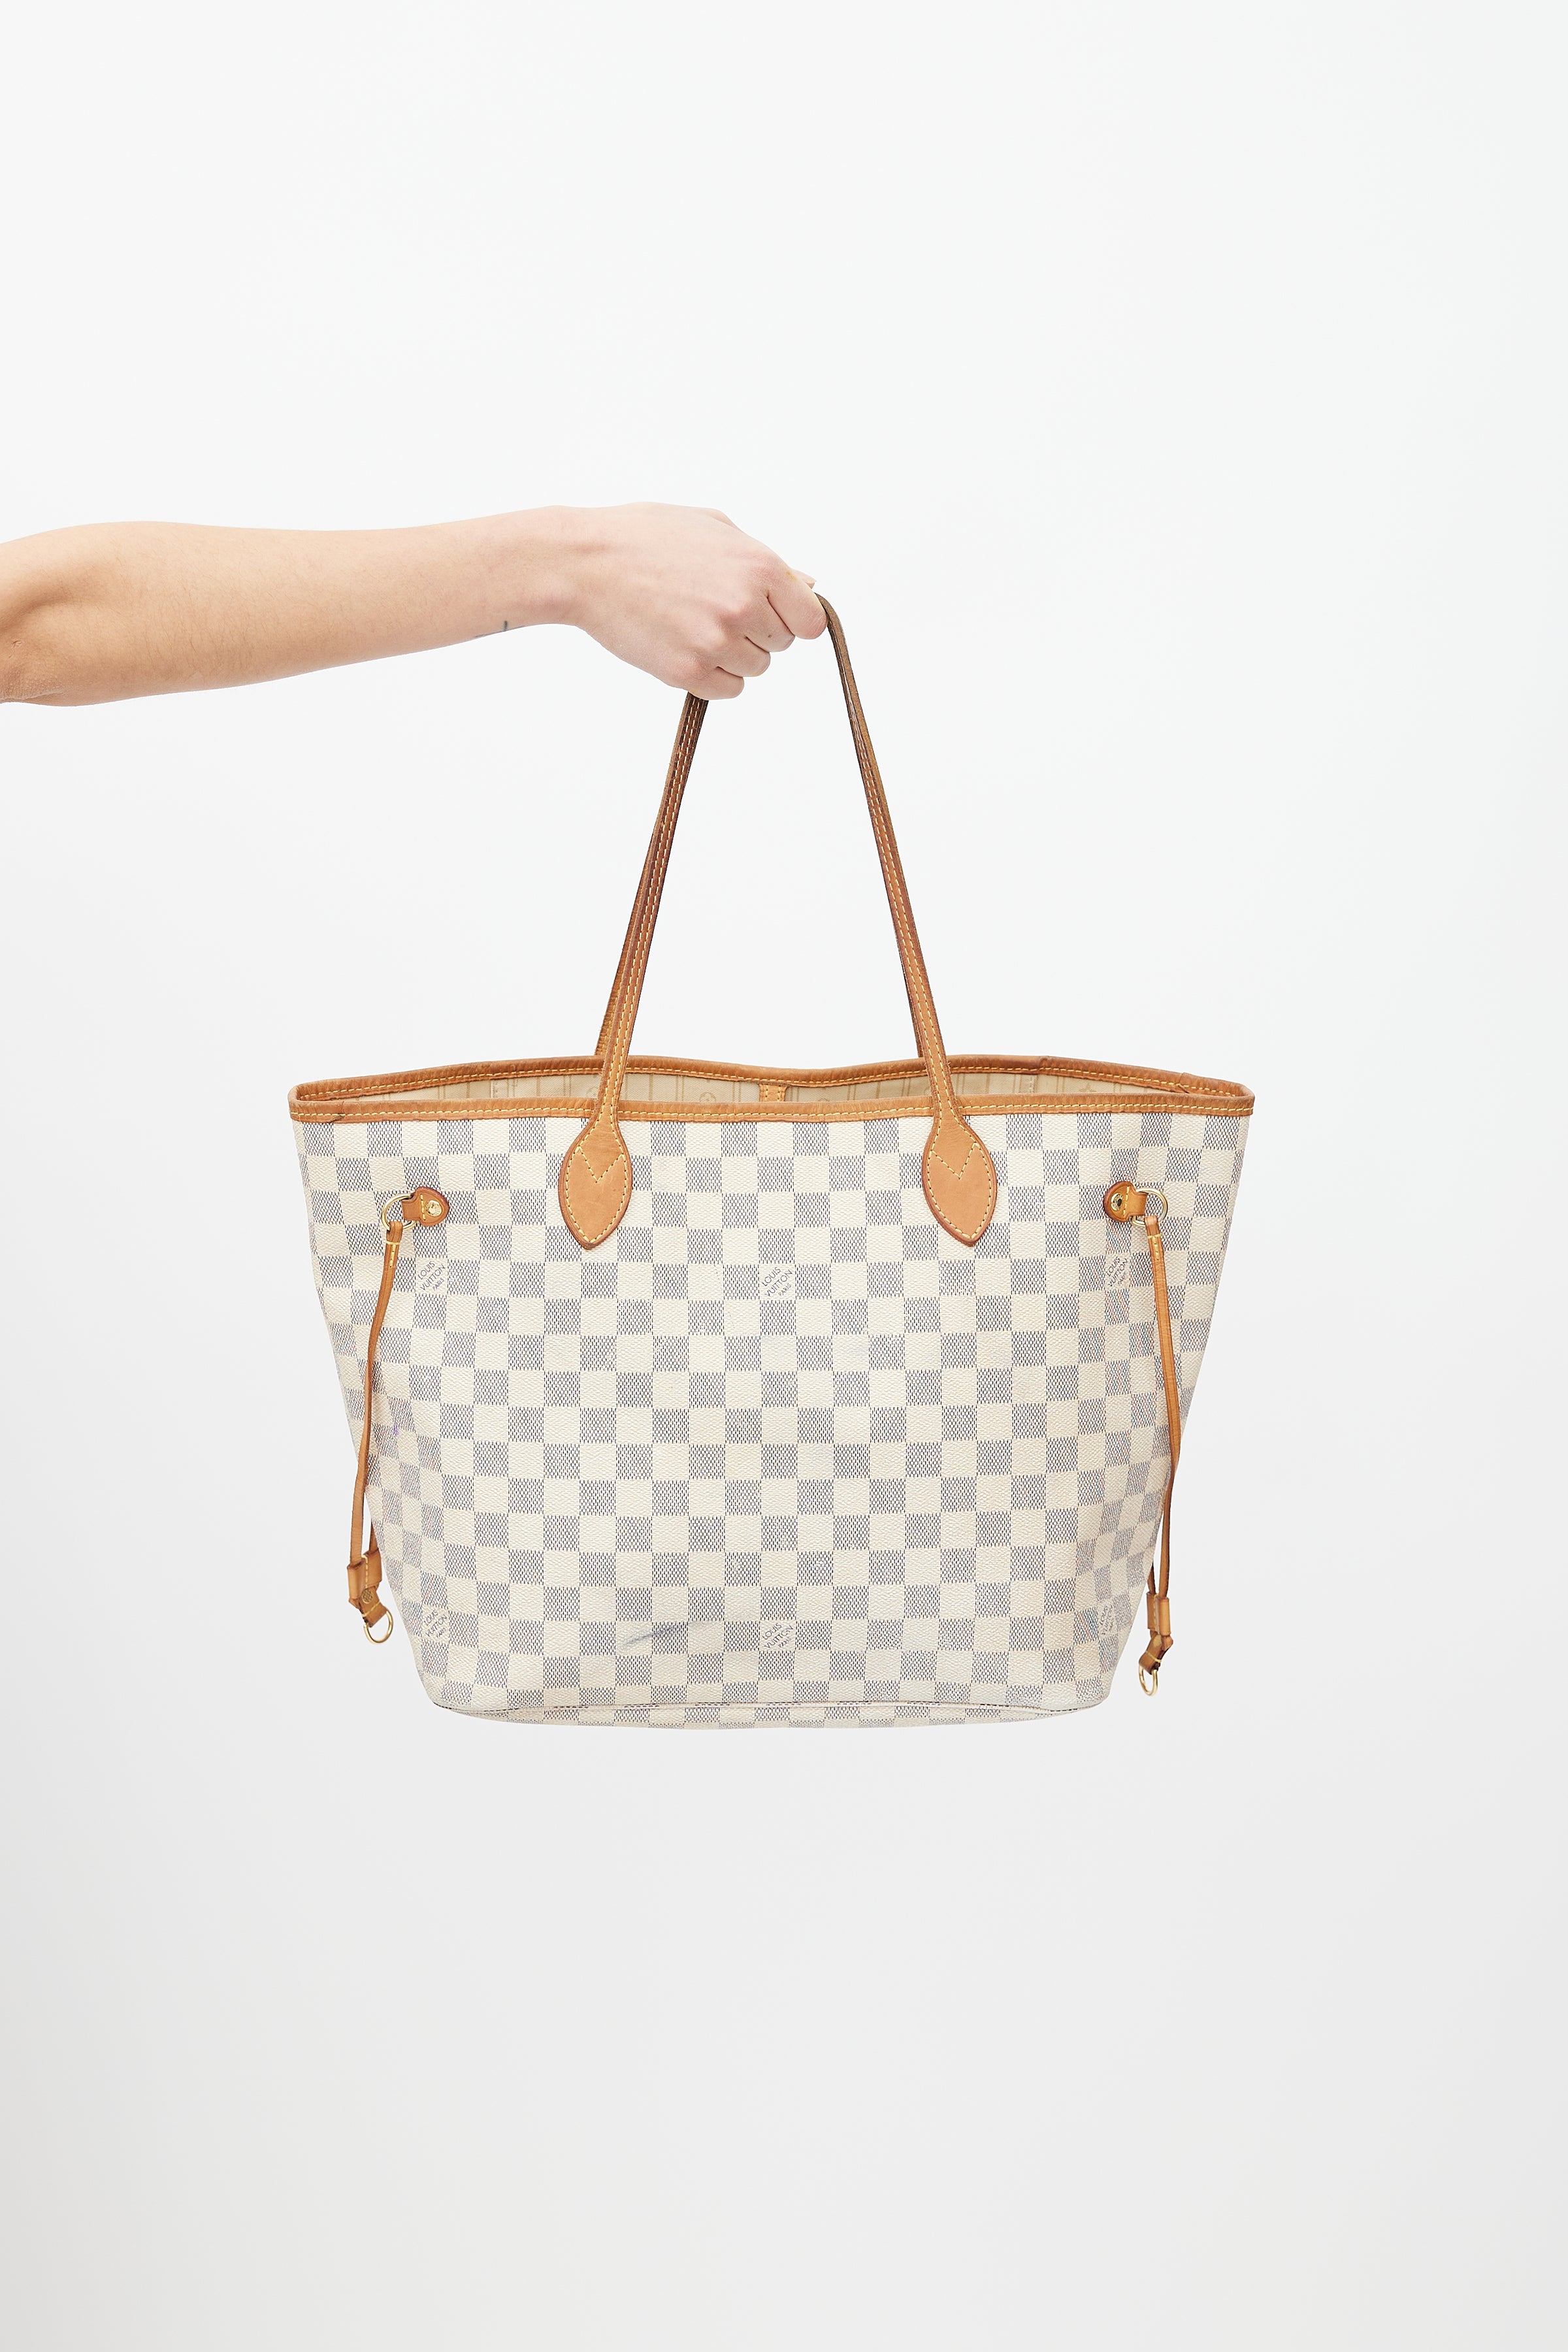 Louis Vuitton Neverfull MM Damier Azur Bags Handbags Purse (Beige